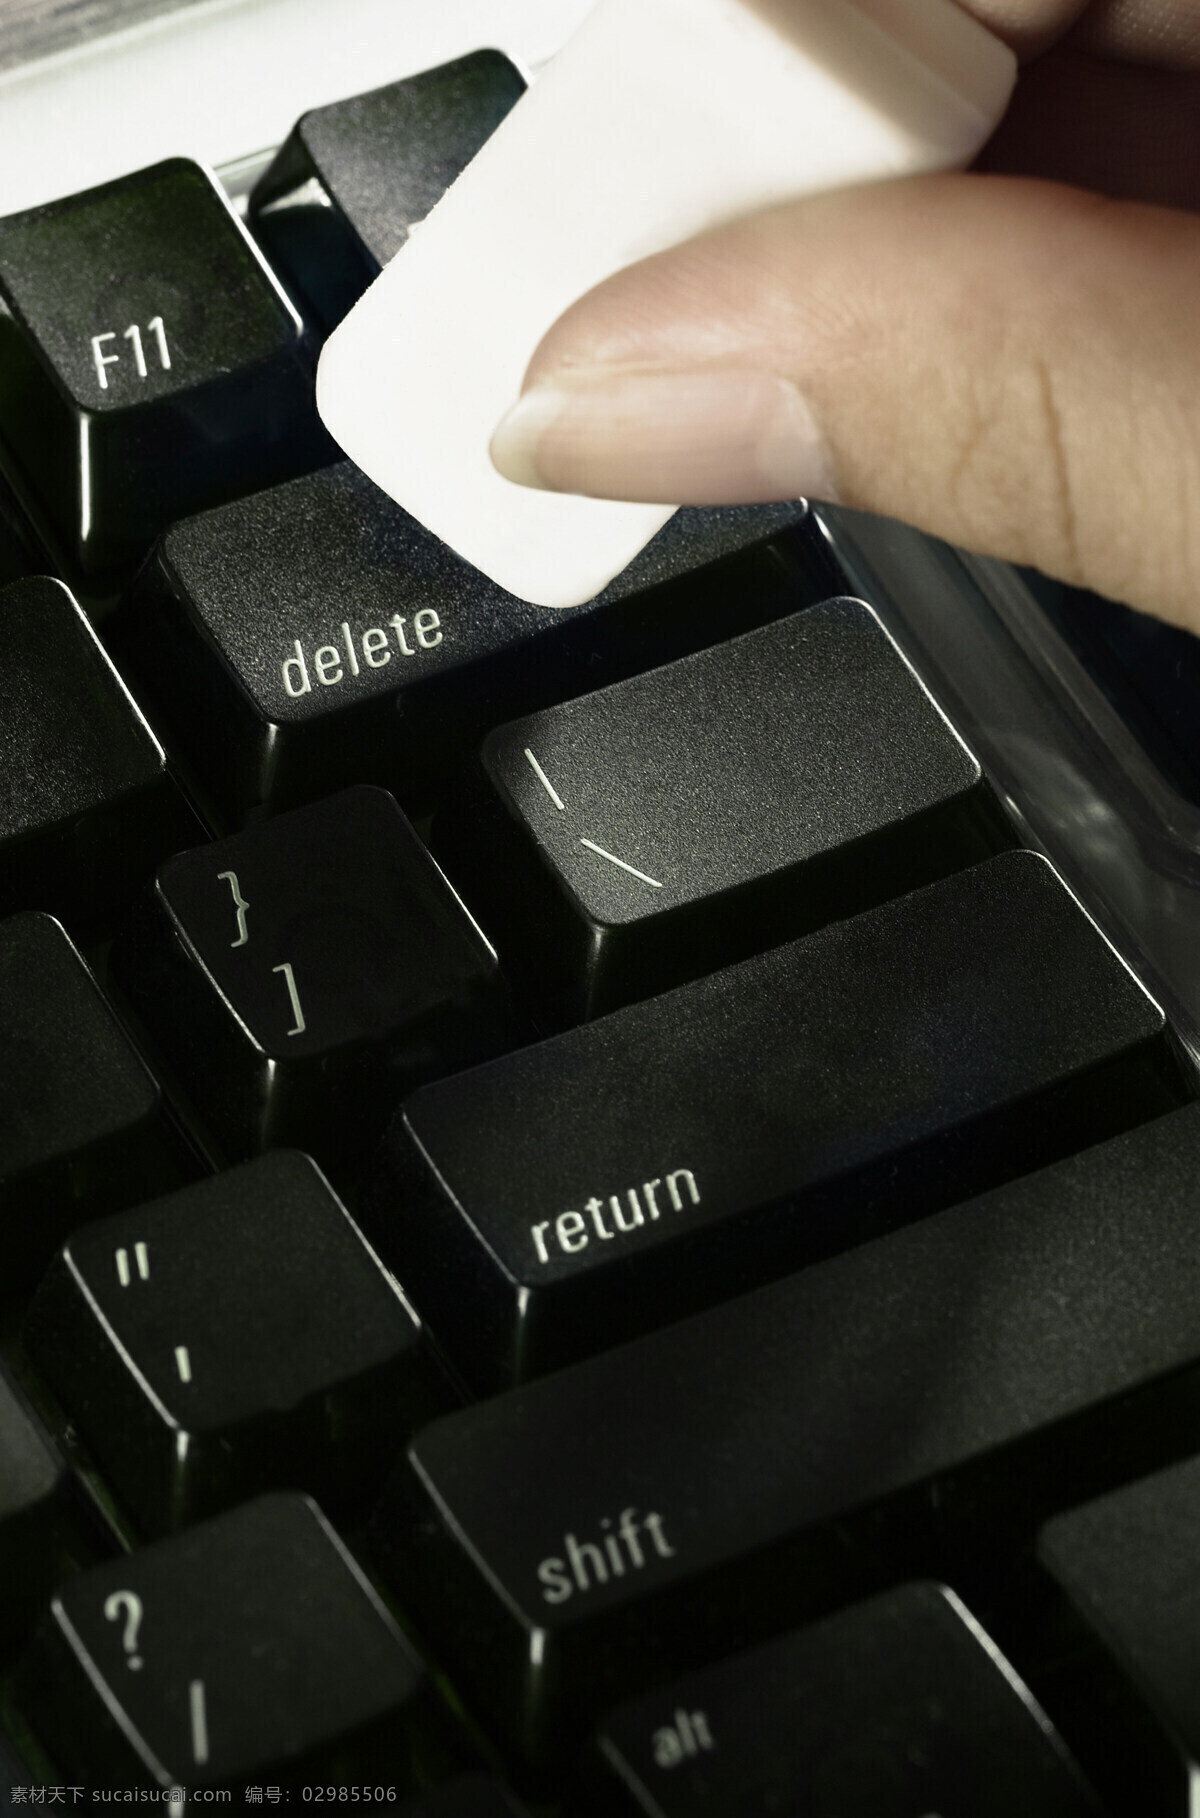 手 白色 块状 清理 键盘 黑色键盘 电脑配件 输入 特写 清洁 手势 拿着 握着 一块 长方体 商业创意 高清图片 电脑数码 生活百科